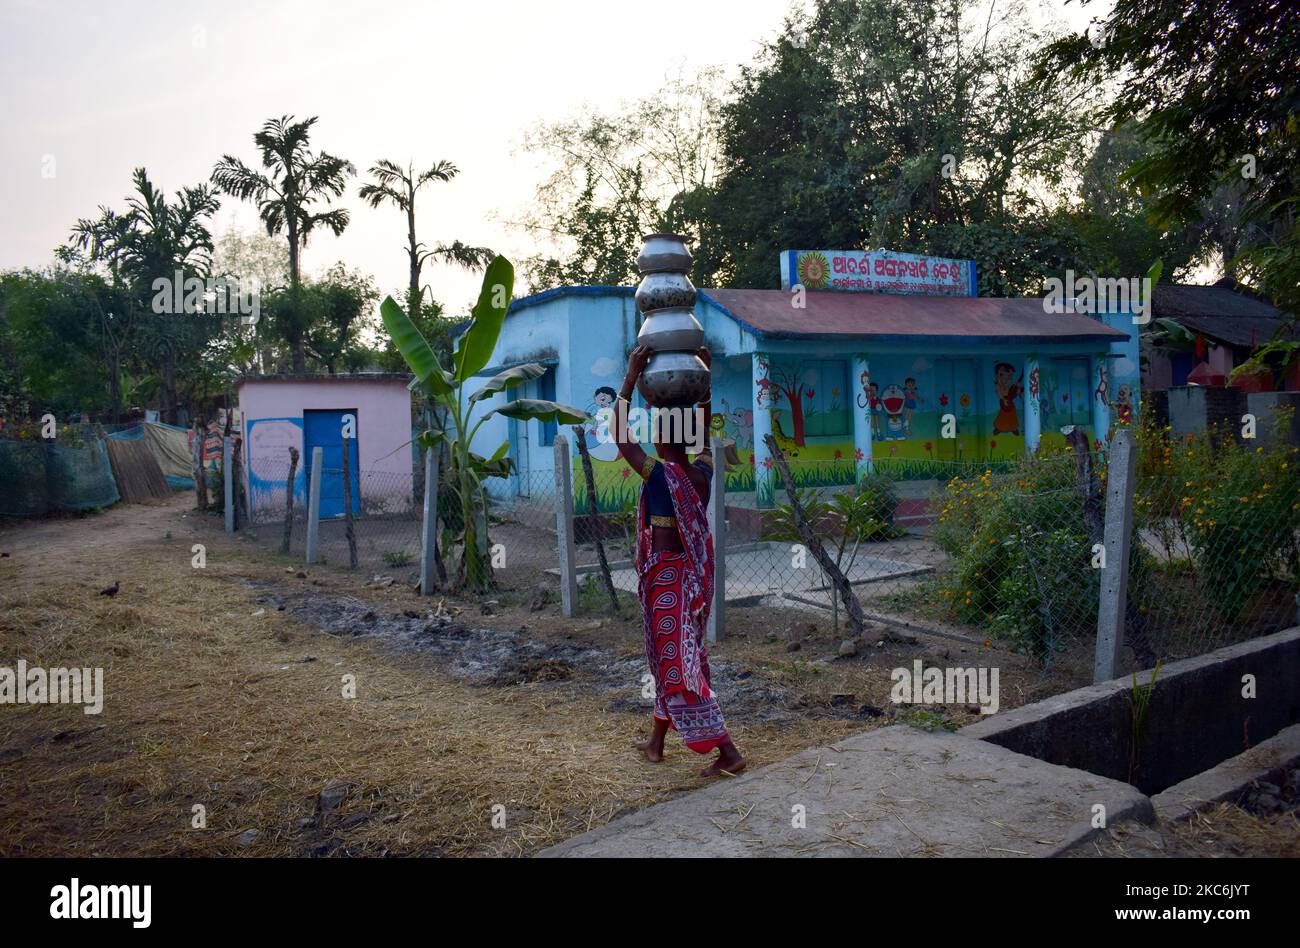 Abitanti della zona di taglio nel distretto di malkangiri dello stato di Odisha ed è vicino da oltre 5 km di distanza dalla capitale come è finora gli abitanti del villaggio che soffrono per la loro connettività stradale villaggio nel distretto di malkangiri dello stato di odisha. Questi sono abitanti del villaggio stanno soffrendo questo tipo di problema dopo l'indipendenza del paese fino ad ora e solo una fonte di trasporto per loro è la barca di paese come stanno vivendo all'interno di Balimela risorse d'acqua da vicino da oltre 50 anni. (Foto di Str/NurPhoto) Foto Stock